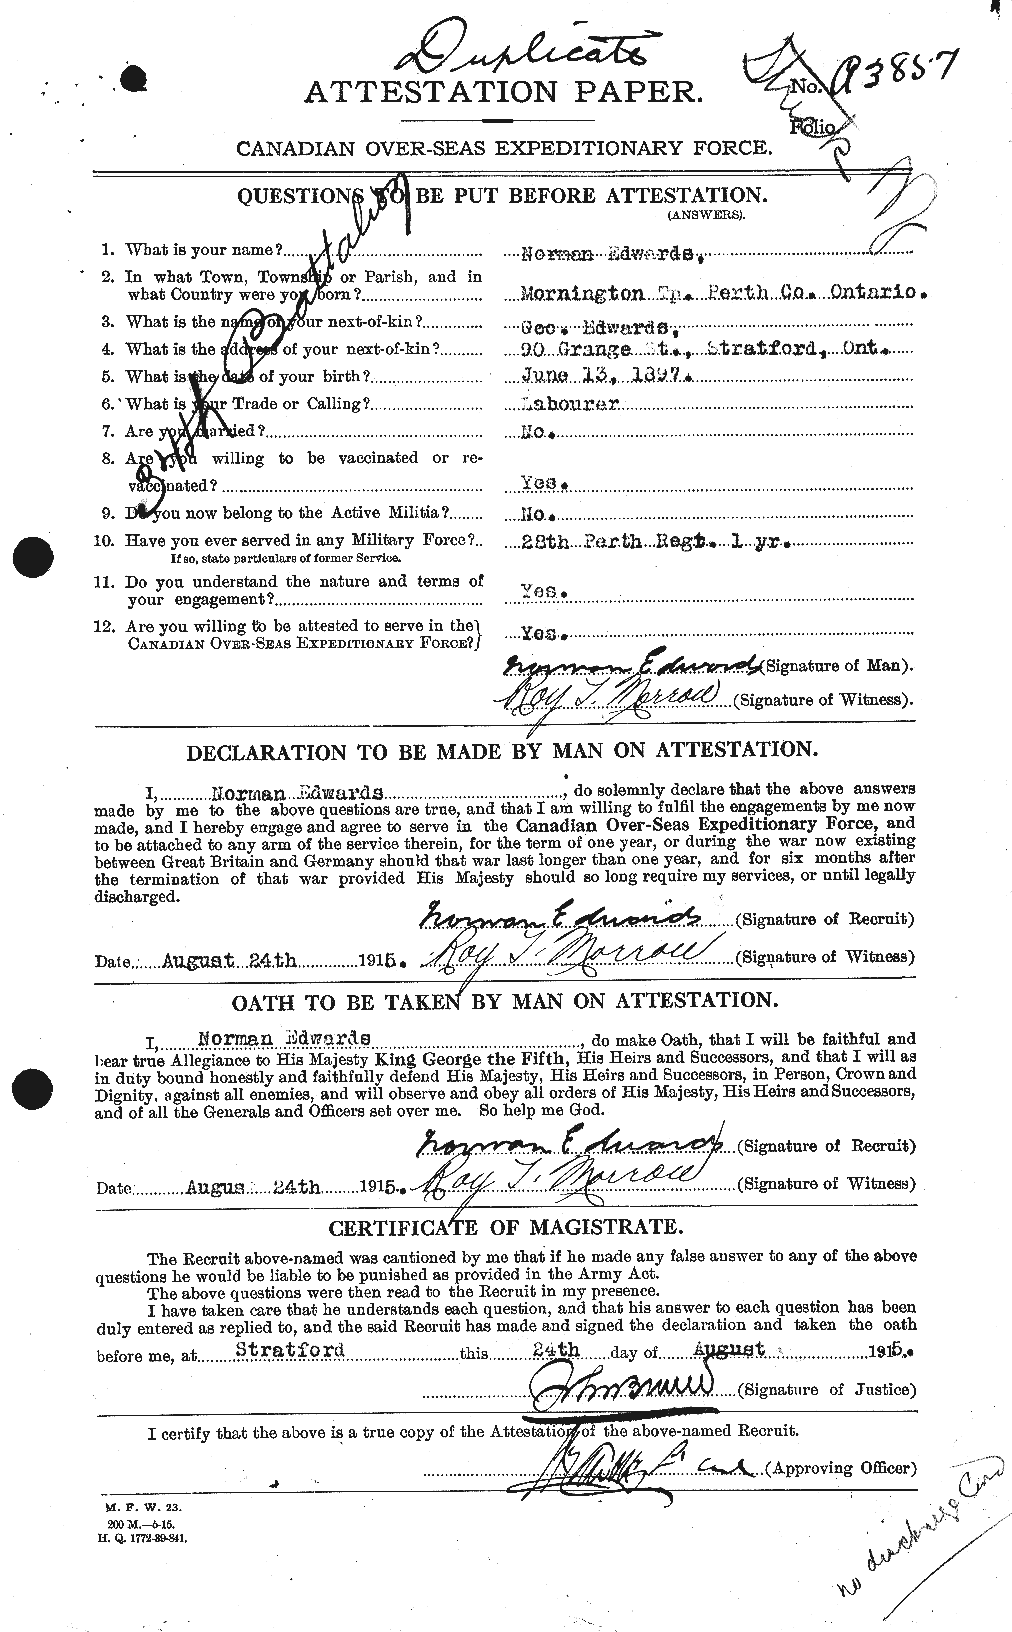 Dossiers du Personnel de la Première Guerre mondiale - CEC 310222a